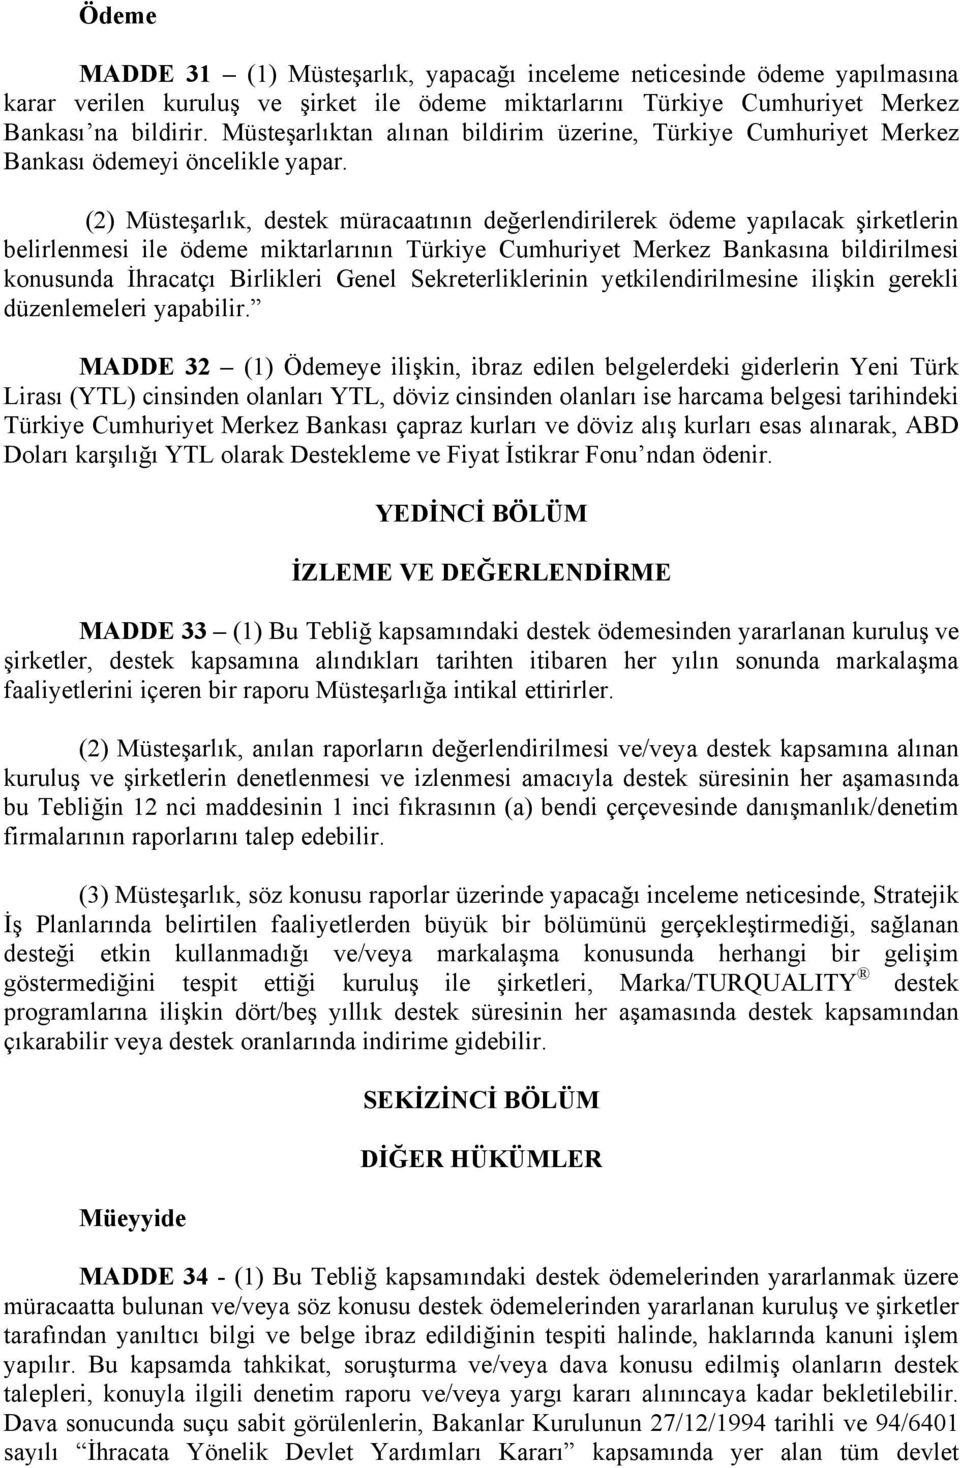 (2) Müsteşarlık, destek müracaatının değerlendirilerek ödeme yapılacak şirketlerin belirlenmesi ile ödeme miktarlarının Türkiye Cumhuriyet Merkez Bankasına bildirilmesi konusunda İhracatçı Birlikleri